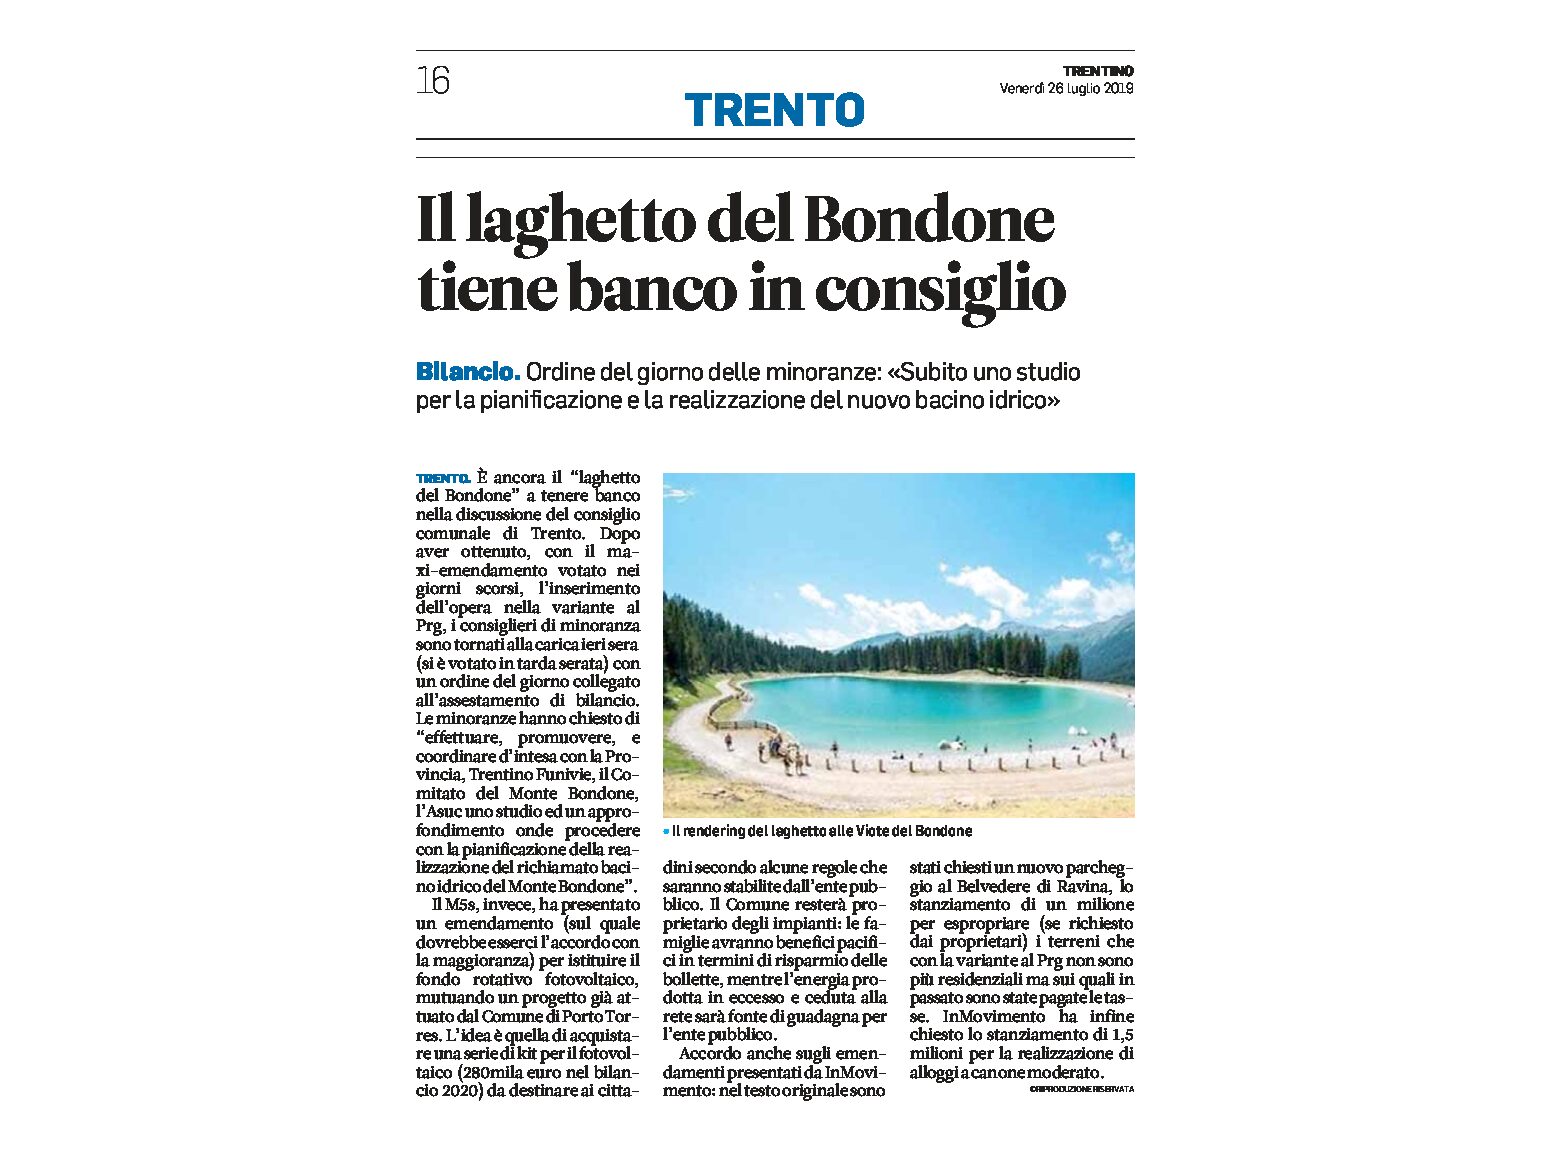 Trento, Prg: il laghetto del Bondone tiene banco in consiglio